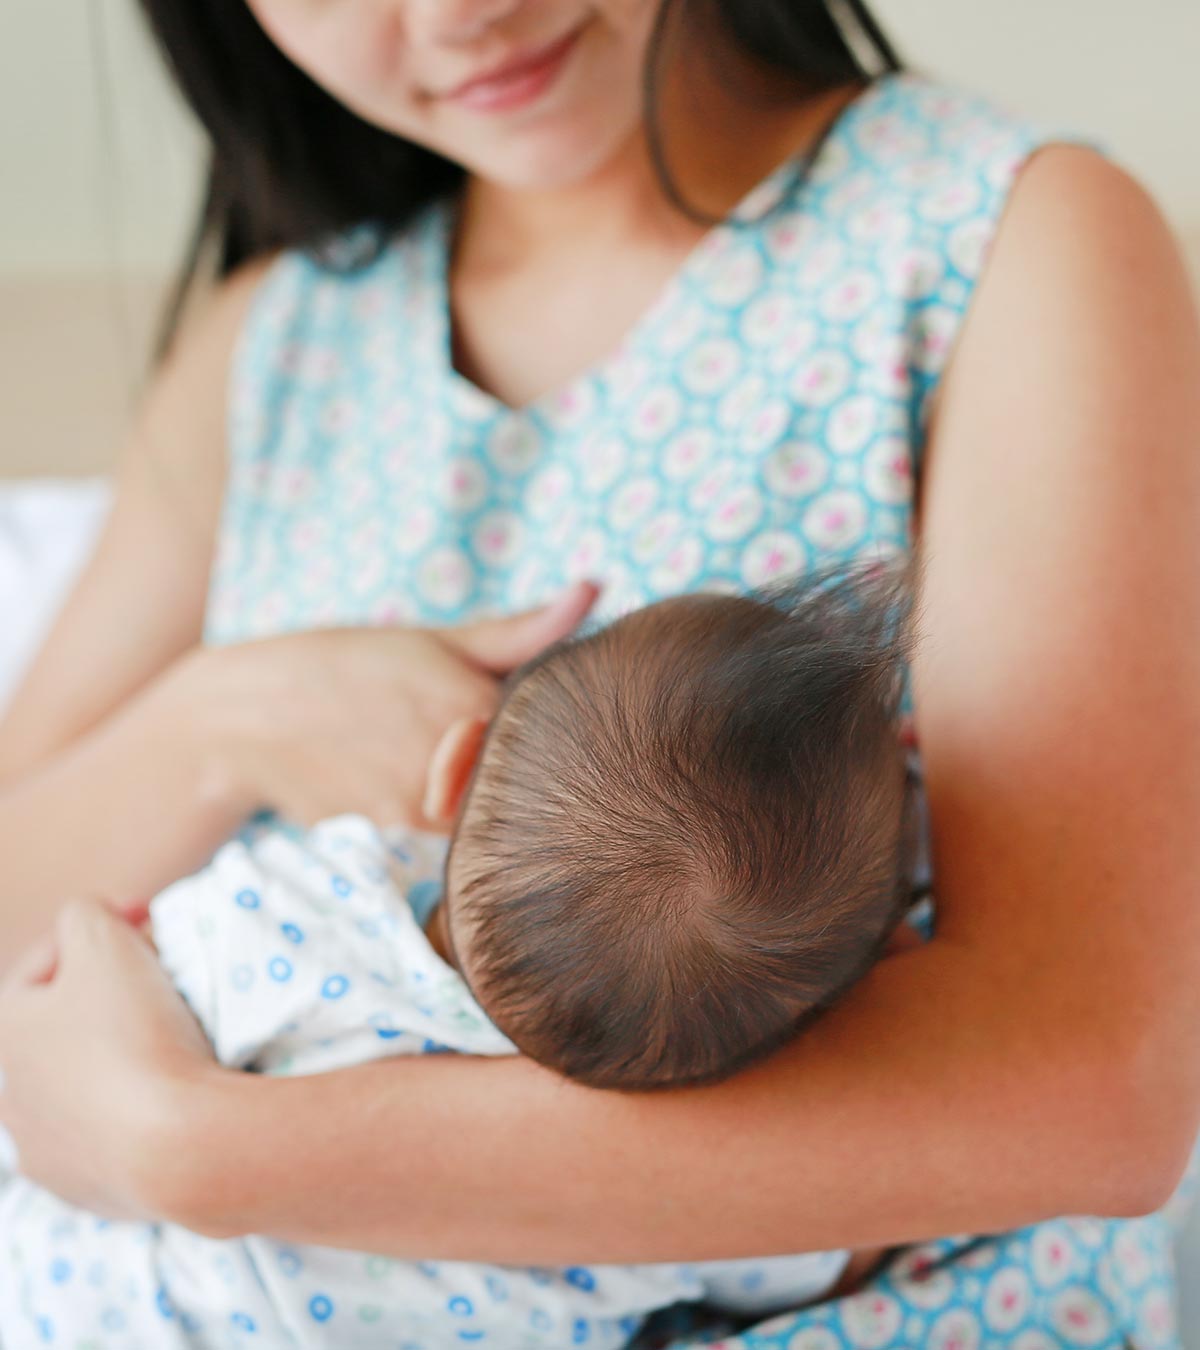 婴儿被母乳呛到:为什么会发生以及该怎么做